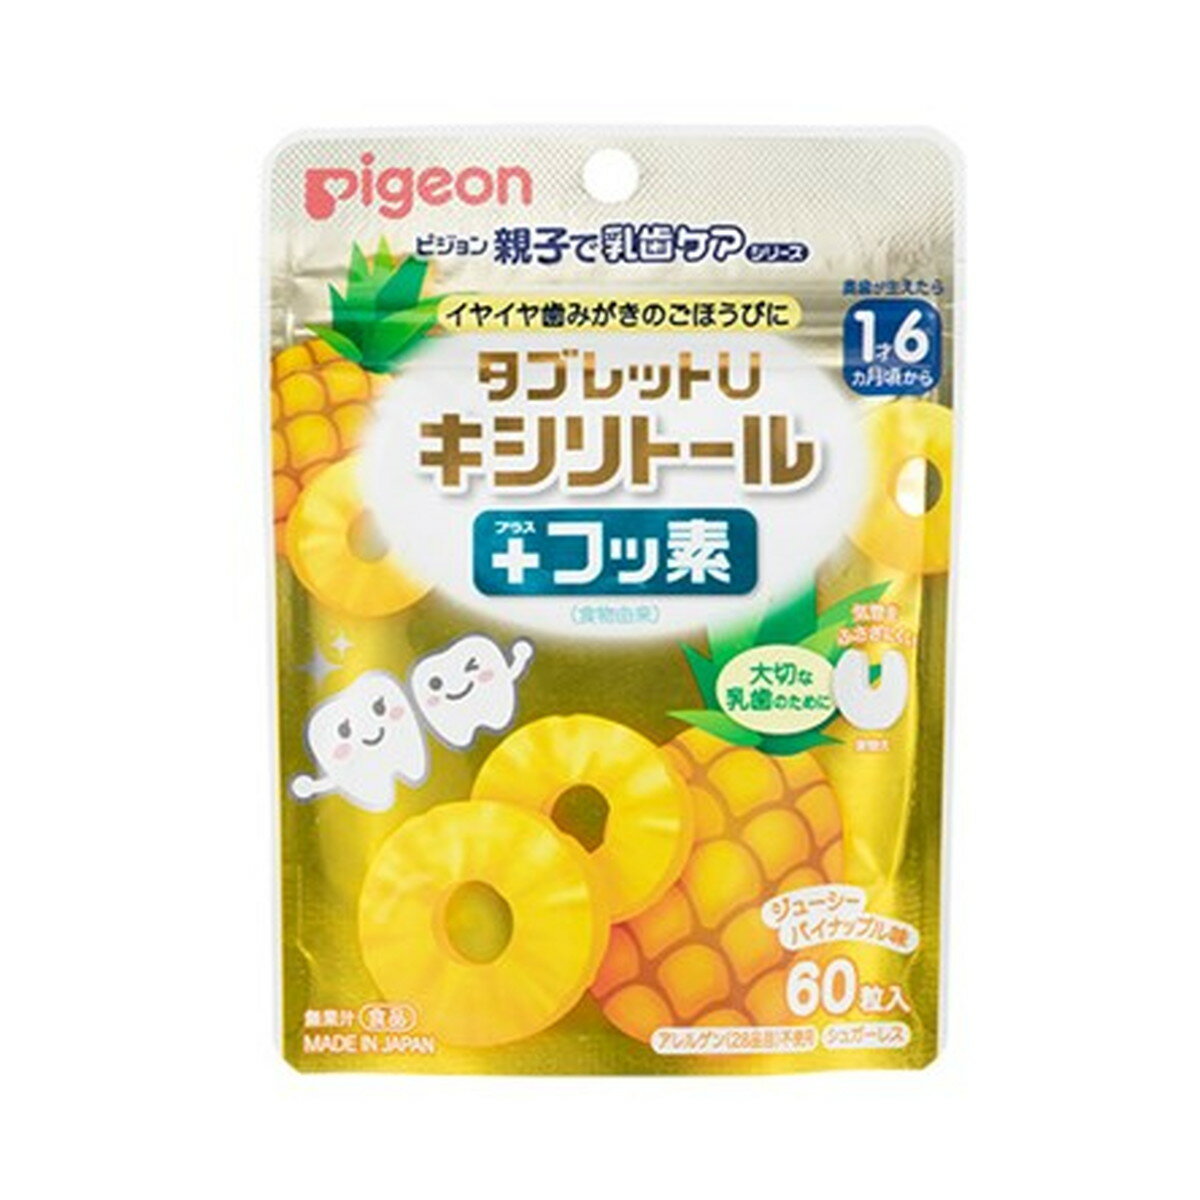 【送料込】ピジョン タブレットU キシリトール + フッ素 ジューシーパイナップル味 60粒入